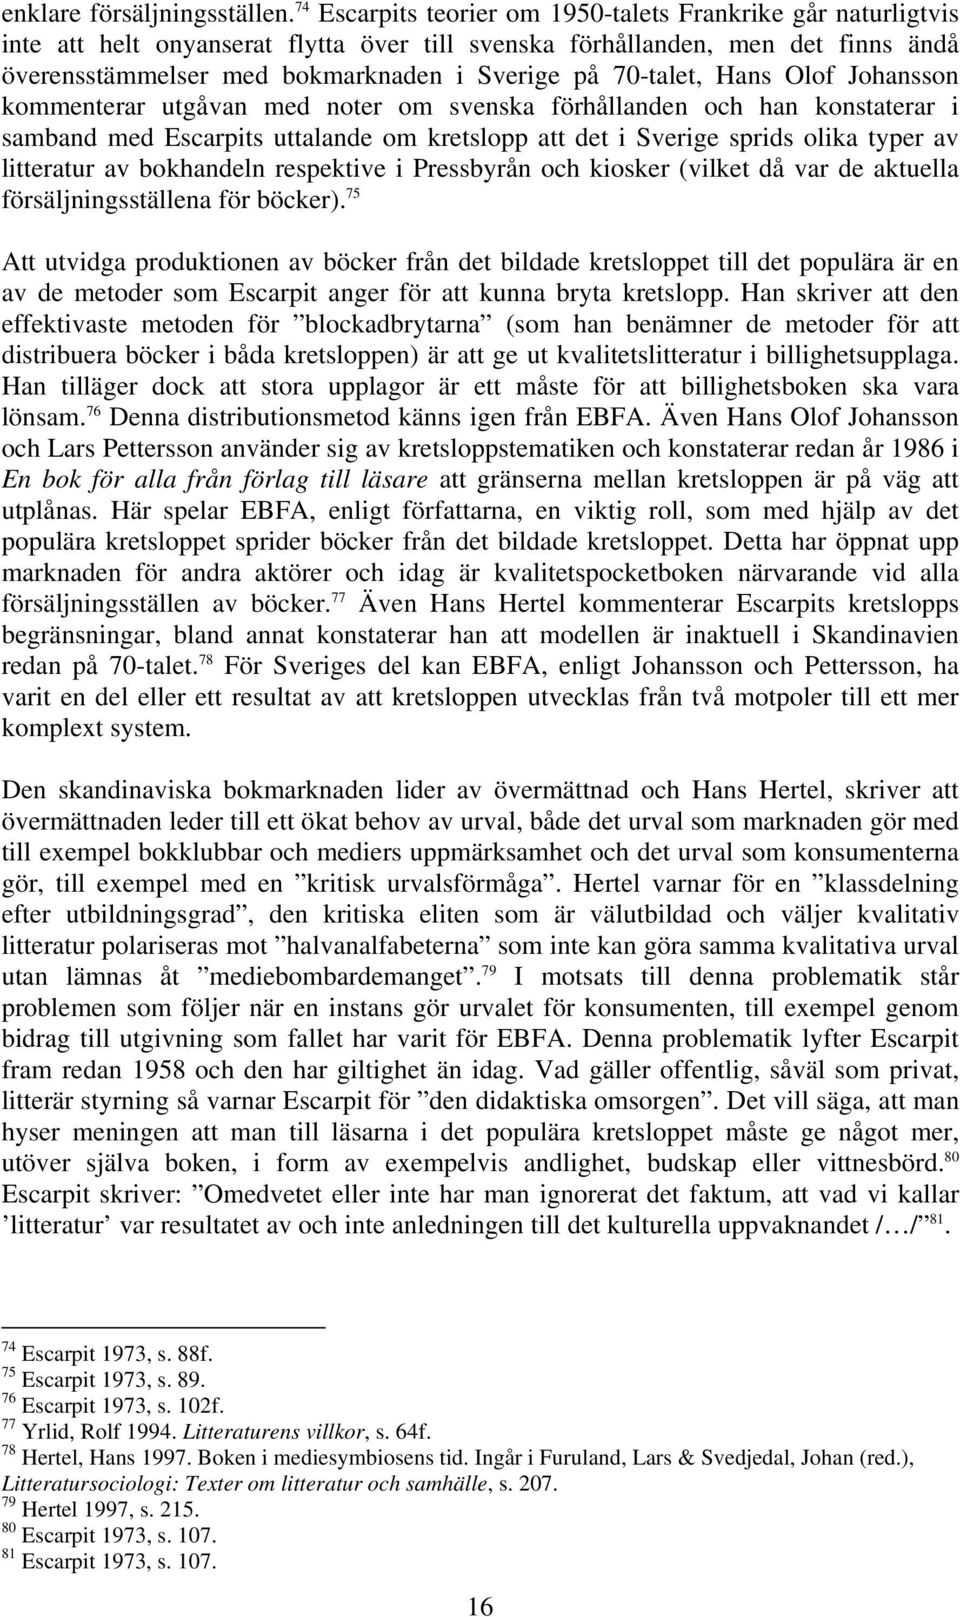 70-talet, Hans Olof Johansson kommenterar utgåvan med noter om svenska förhållanden och han konstaterar i samband med Escarpits uttalande om kretslopp att det i Sverige sprids olika typer av